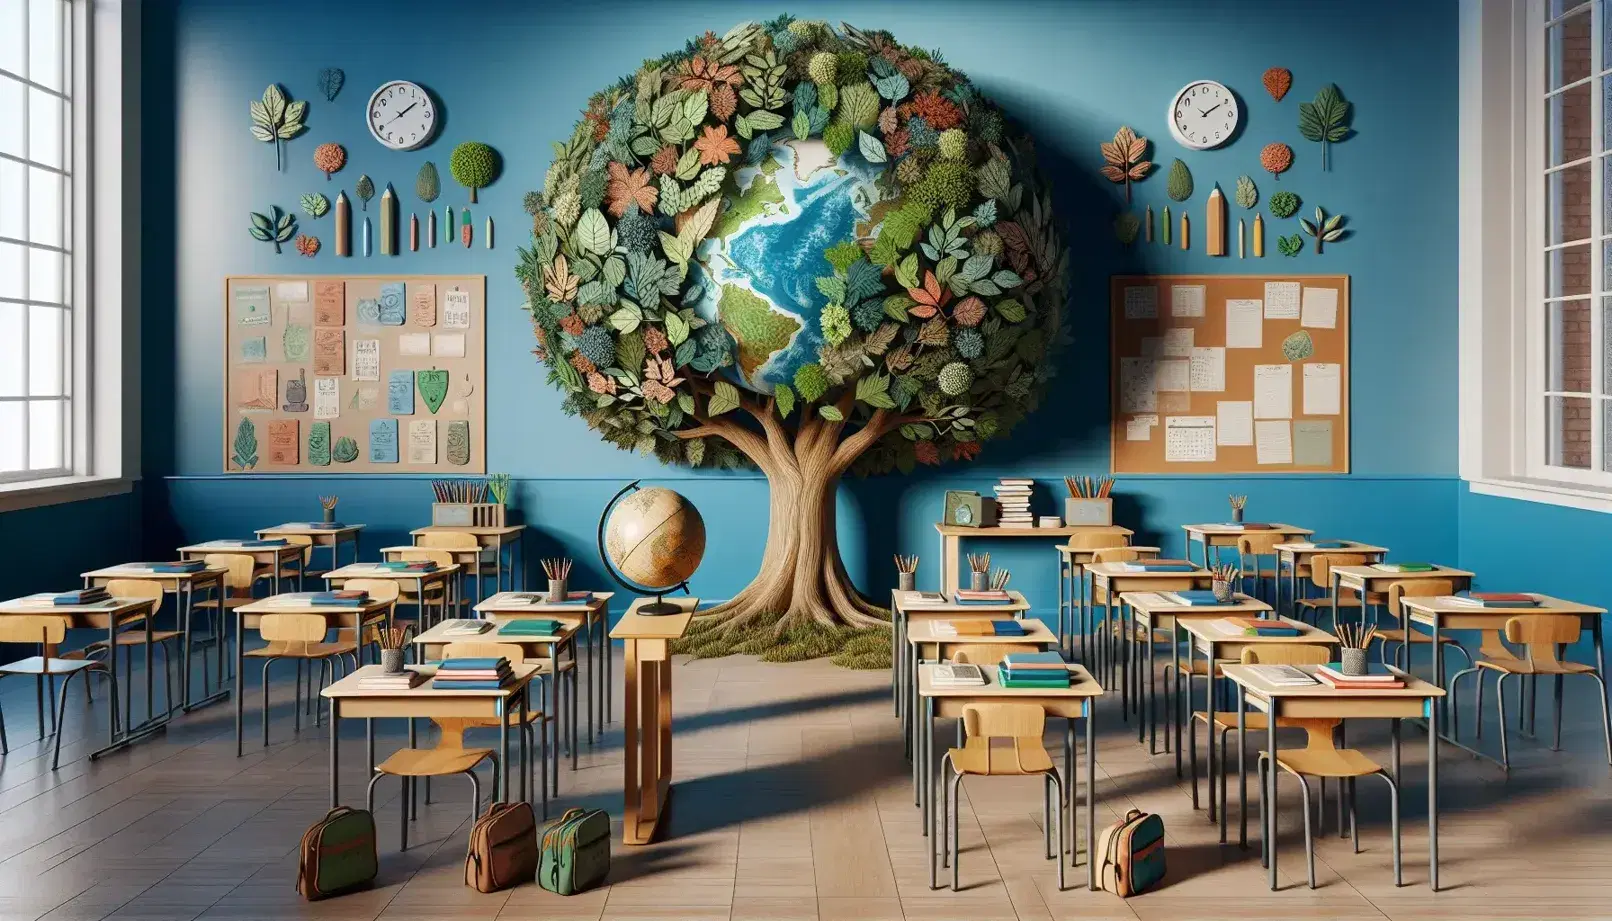 Aula scolastica colorata con albero decorativo, banchi ordinati con libri e astucci, globo terrestre e microscopio su scrivania.